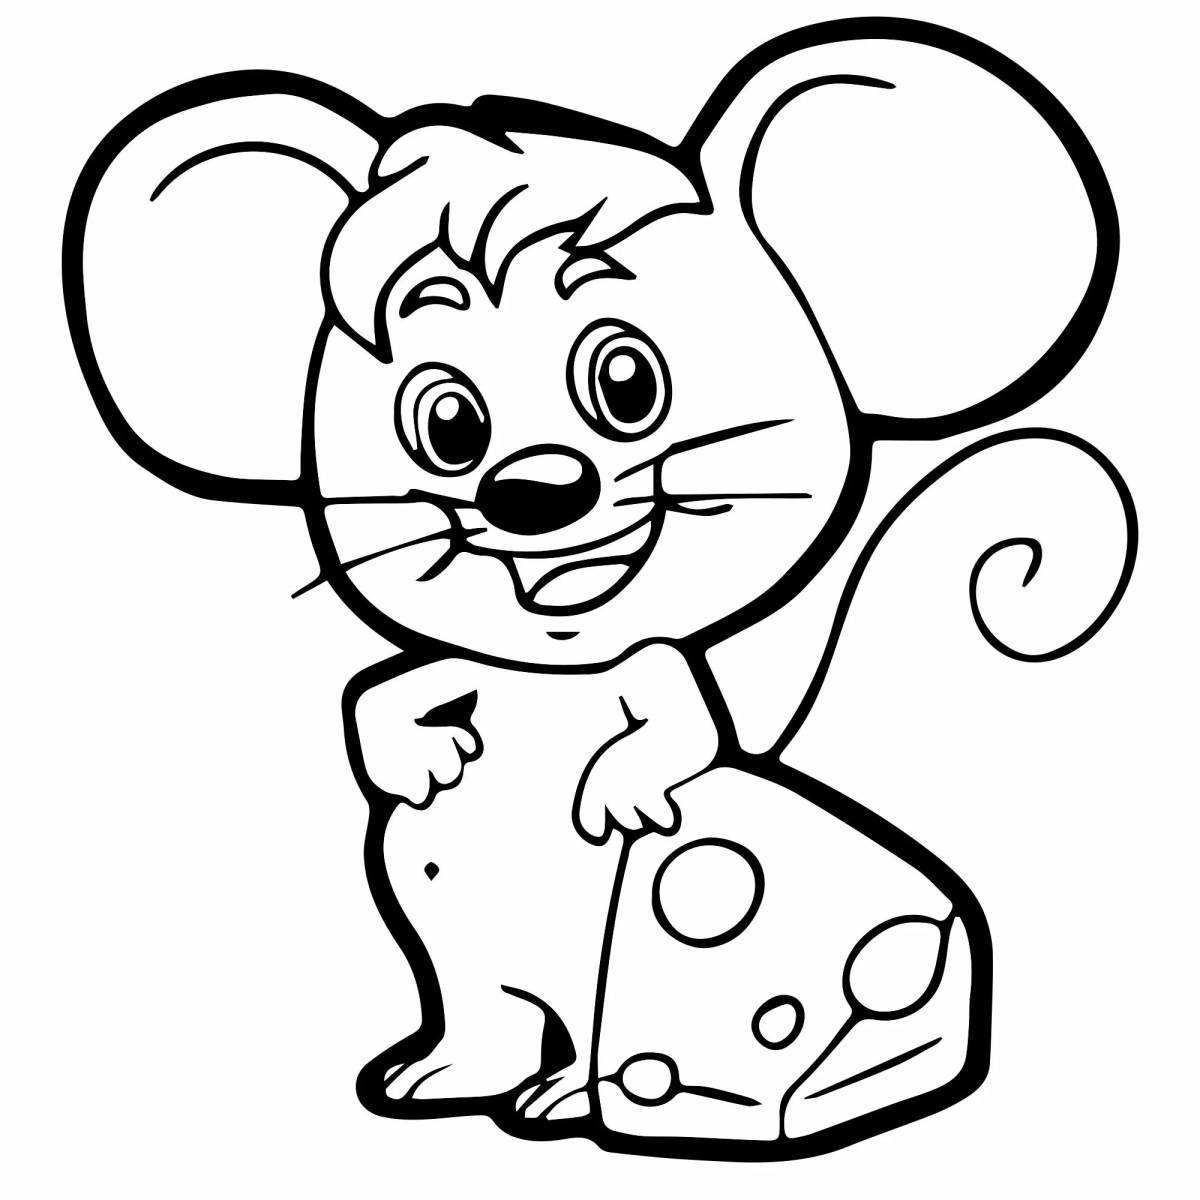 Раскраска - Сказочная мышка